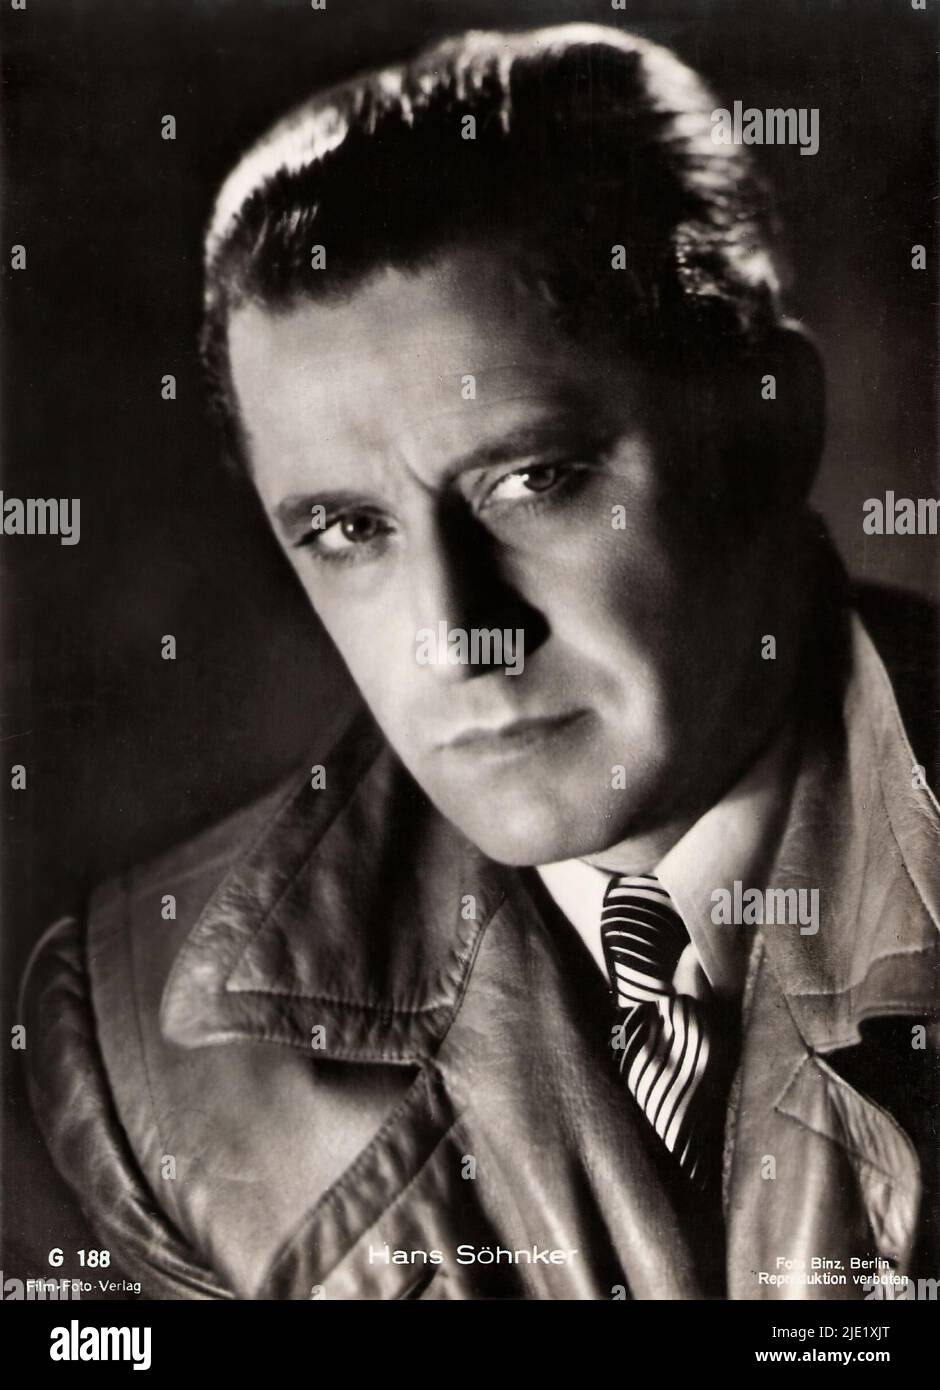 Porträt von Hans Söhnker - Filmstar des Deutschen Dritten Reiches Stockfoto